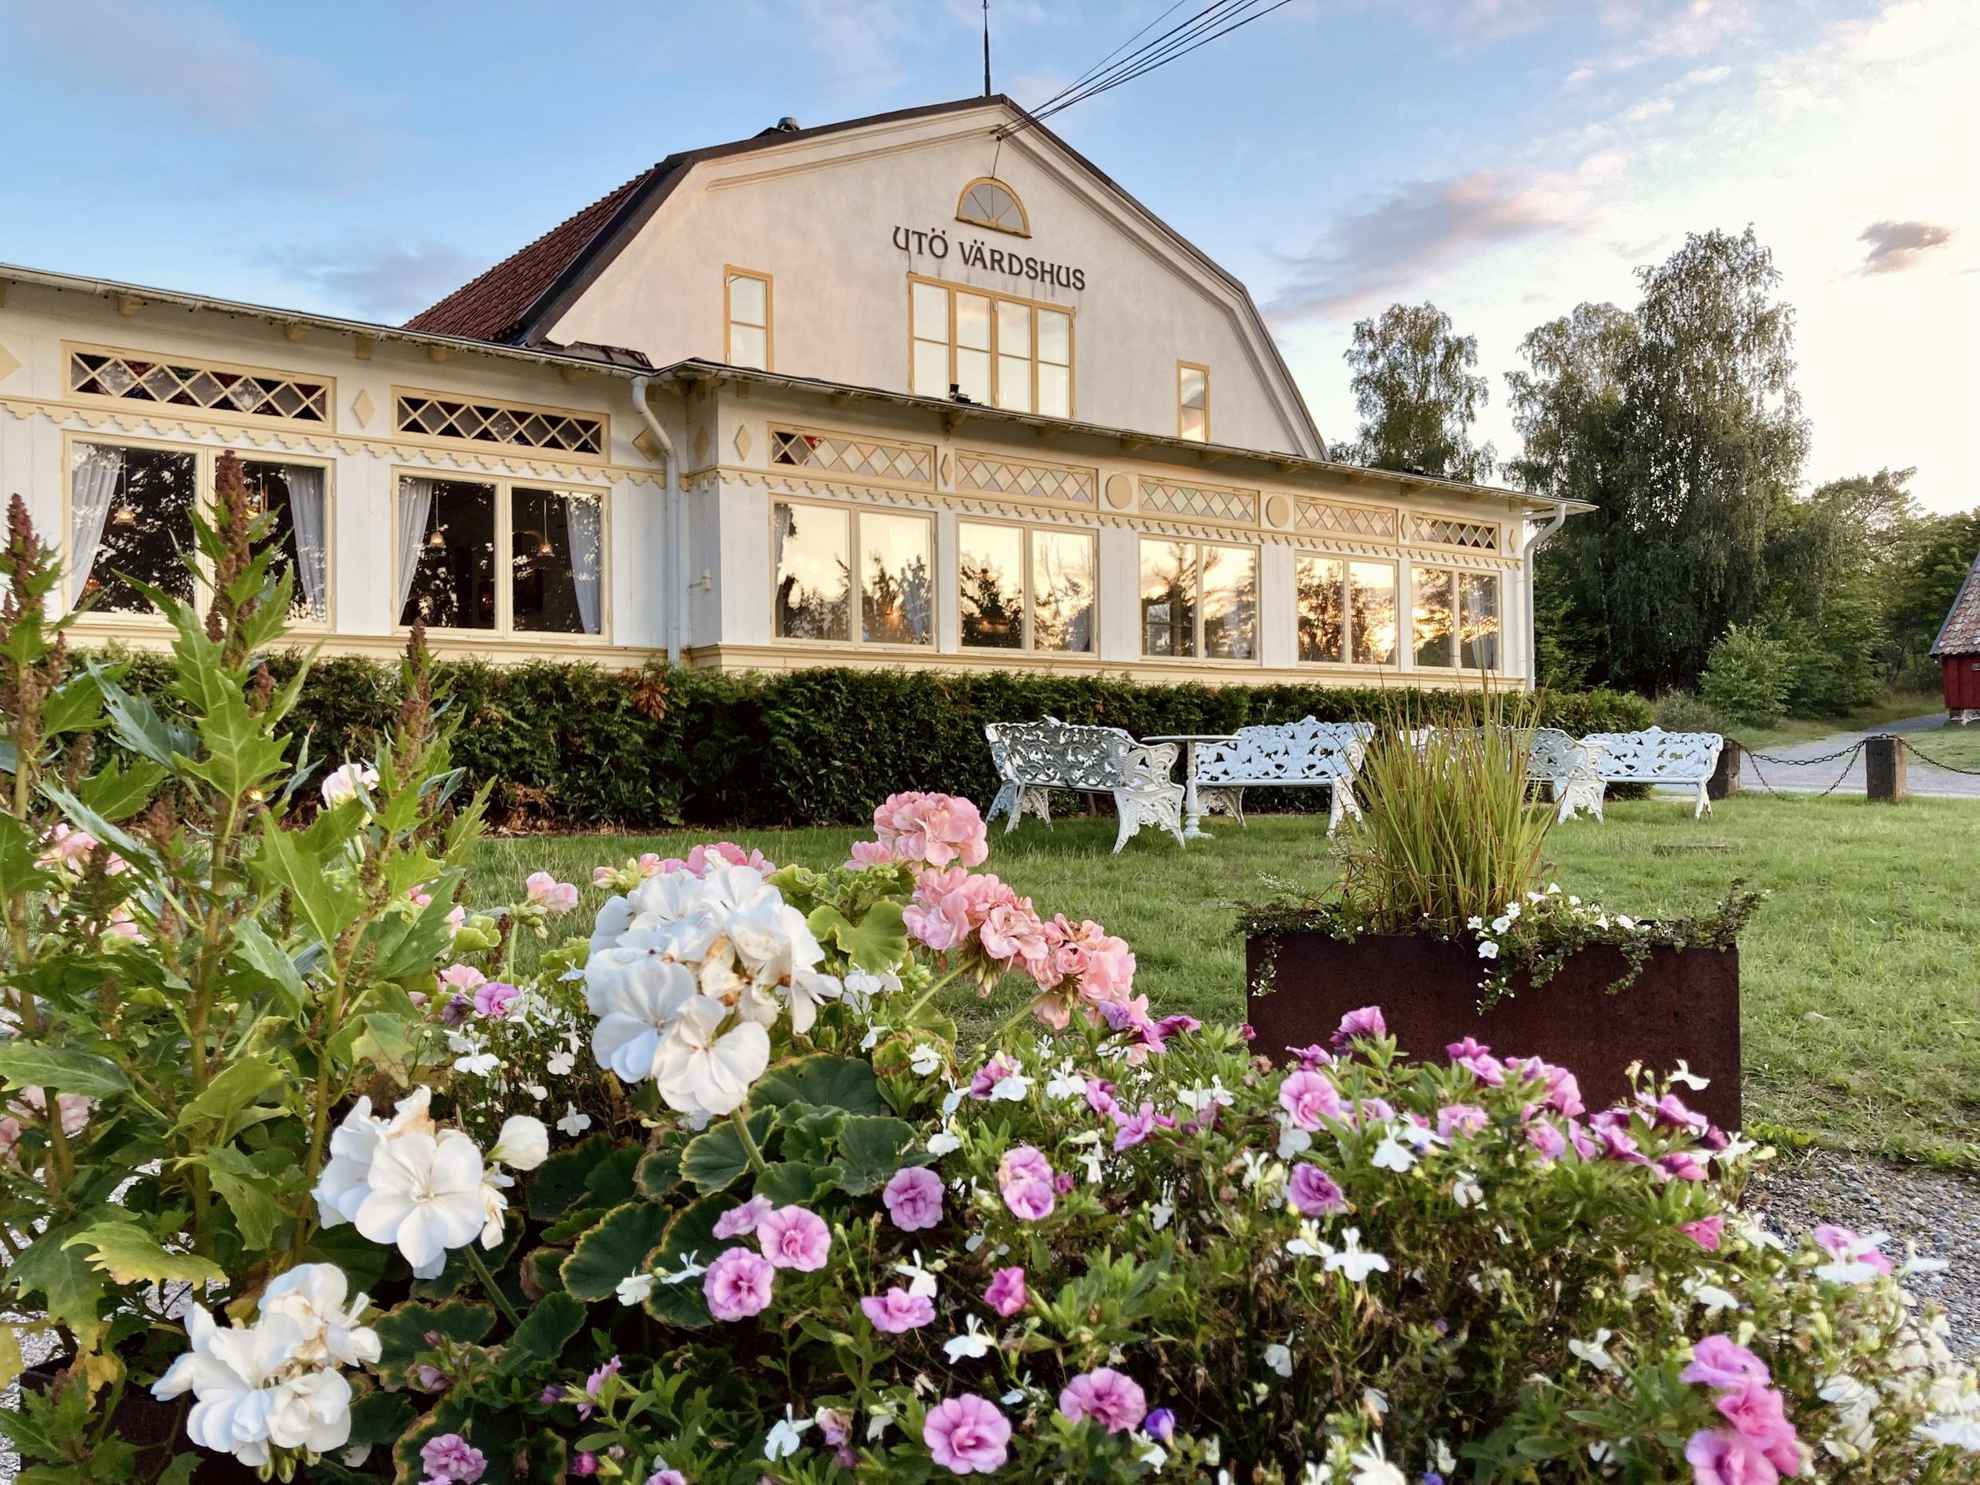 Een witte villa uit de eeuwwisseling met lichtgele uitgesneden details rond de ramen. Struiken met roze bloemen zijn zichtbaar op de voorgrond.